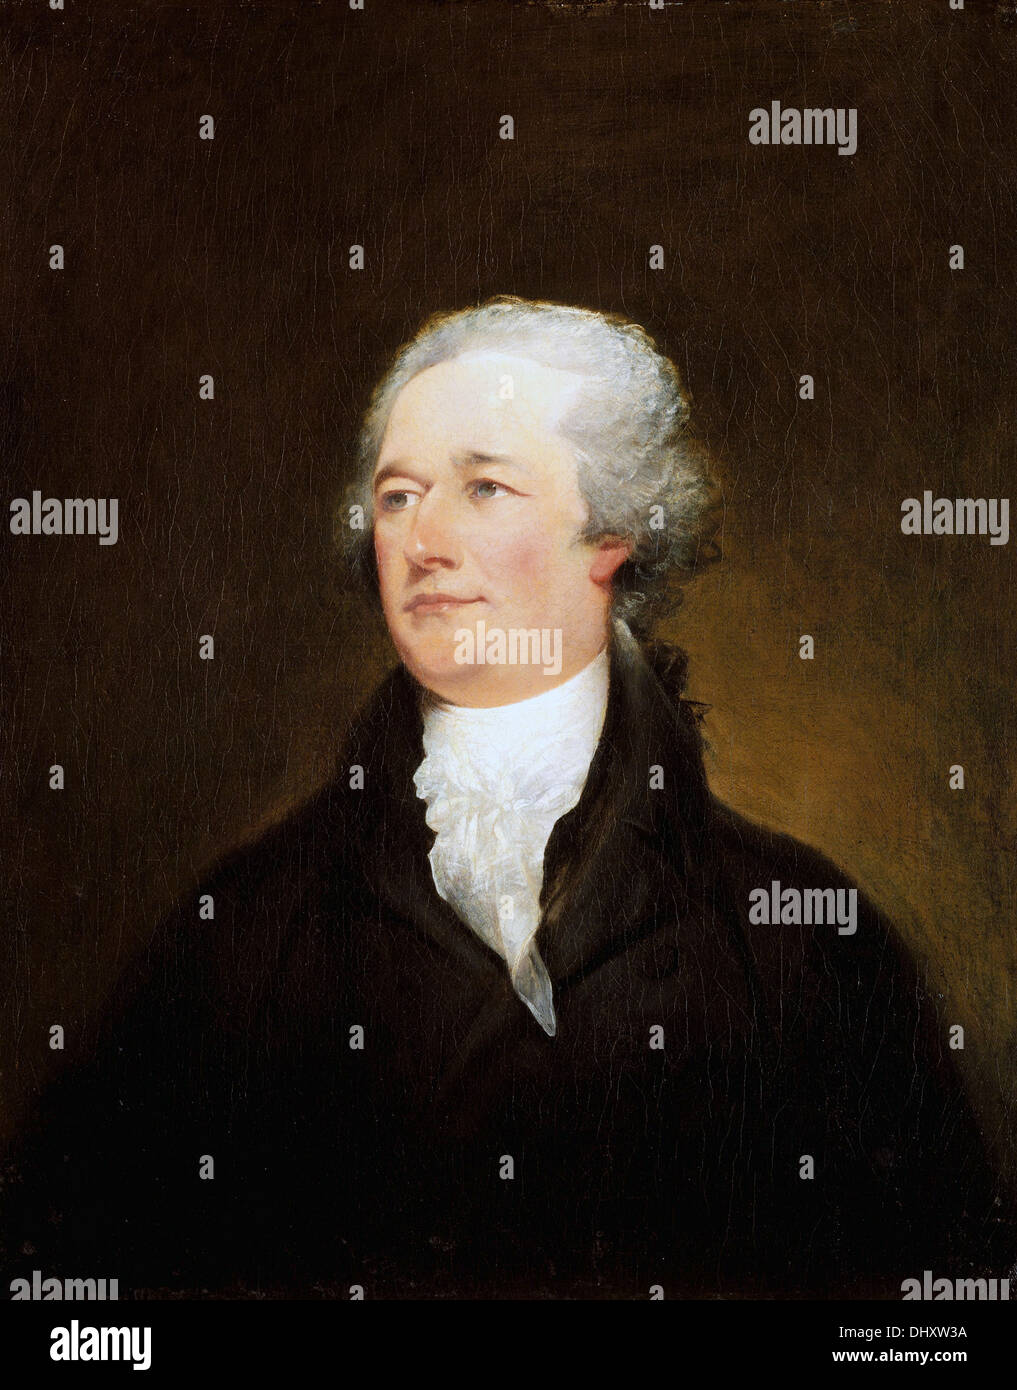 Alexander Hamilton - by John Trumbull, 1806 Stock Photo